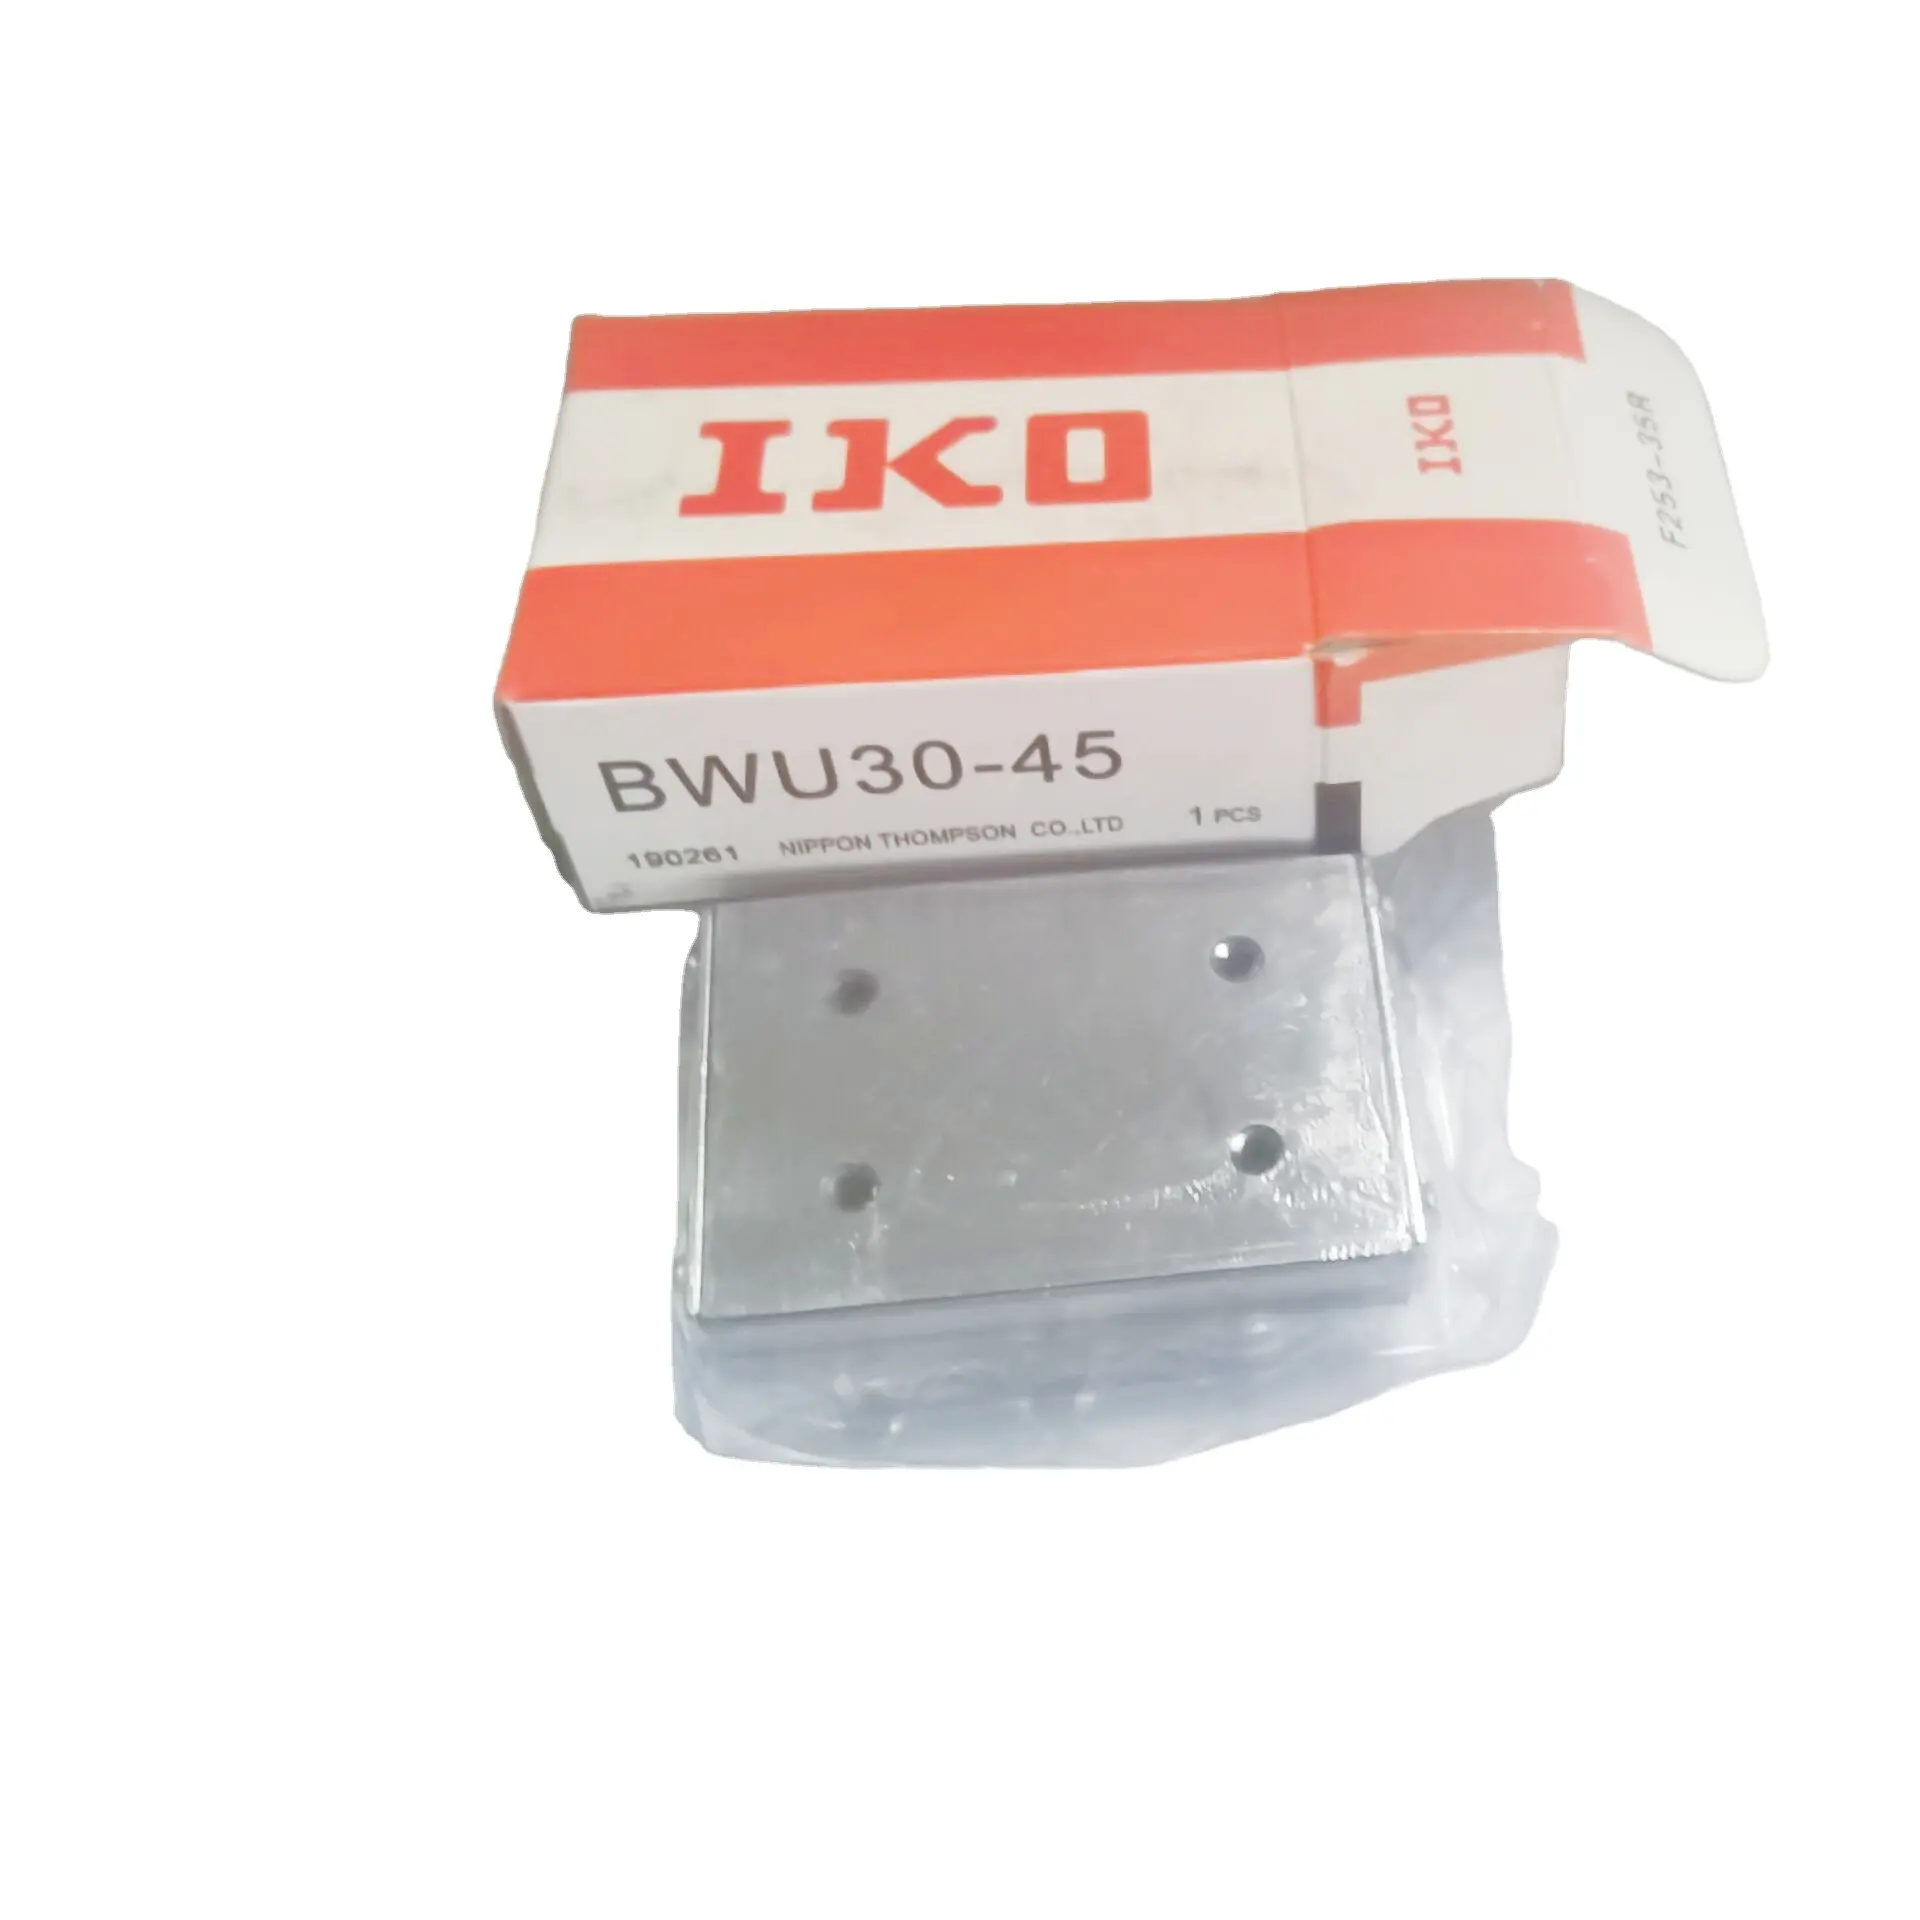 IKO 선형 슬라이드 유닛 BWU6-20 BWU 6-20 BWU620 러너 블록 일본 신제품 2020 자동화 장비 합판 상자 5 년 JP